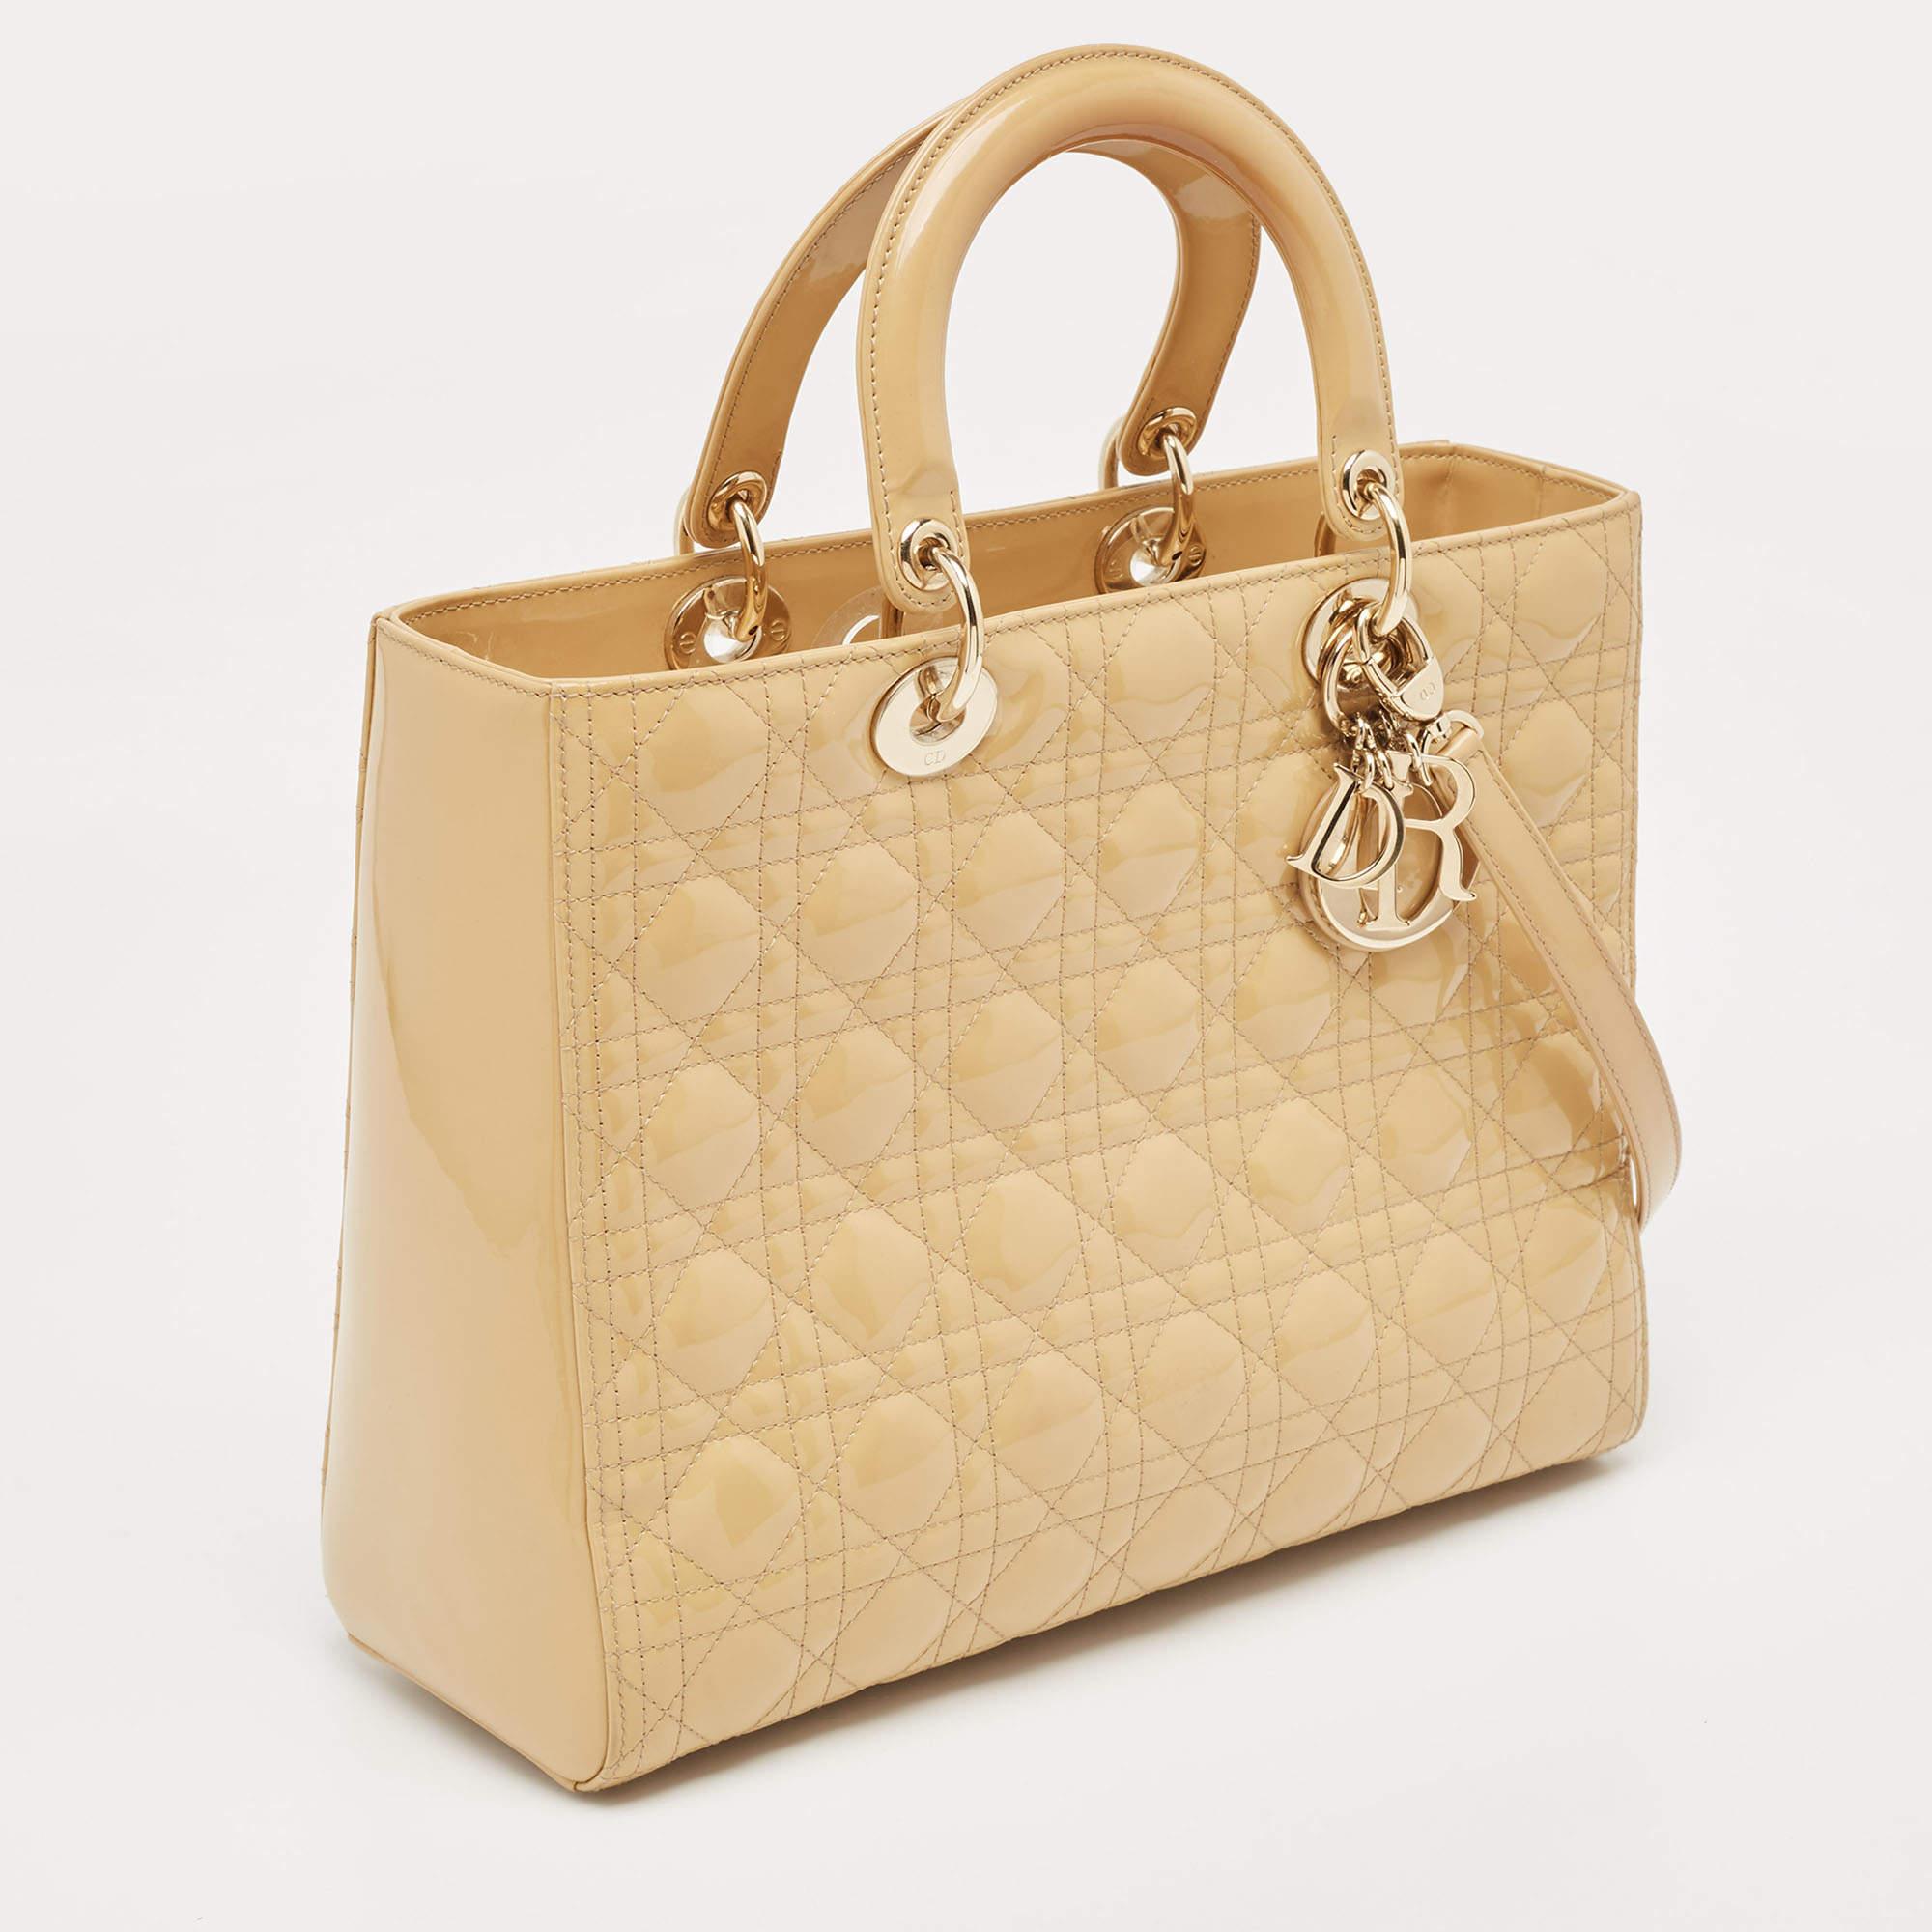 Dior grand sac cabas Lady Dior en cuir verni beige cannage 2